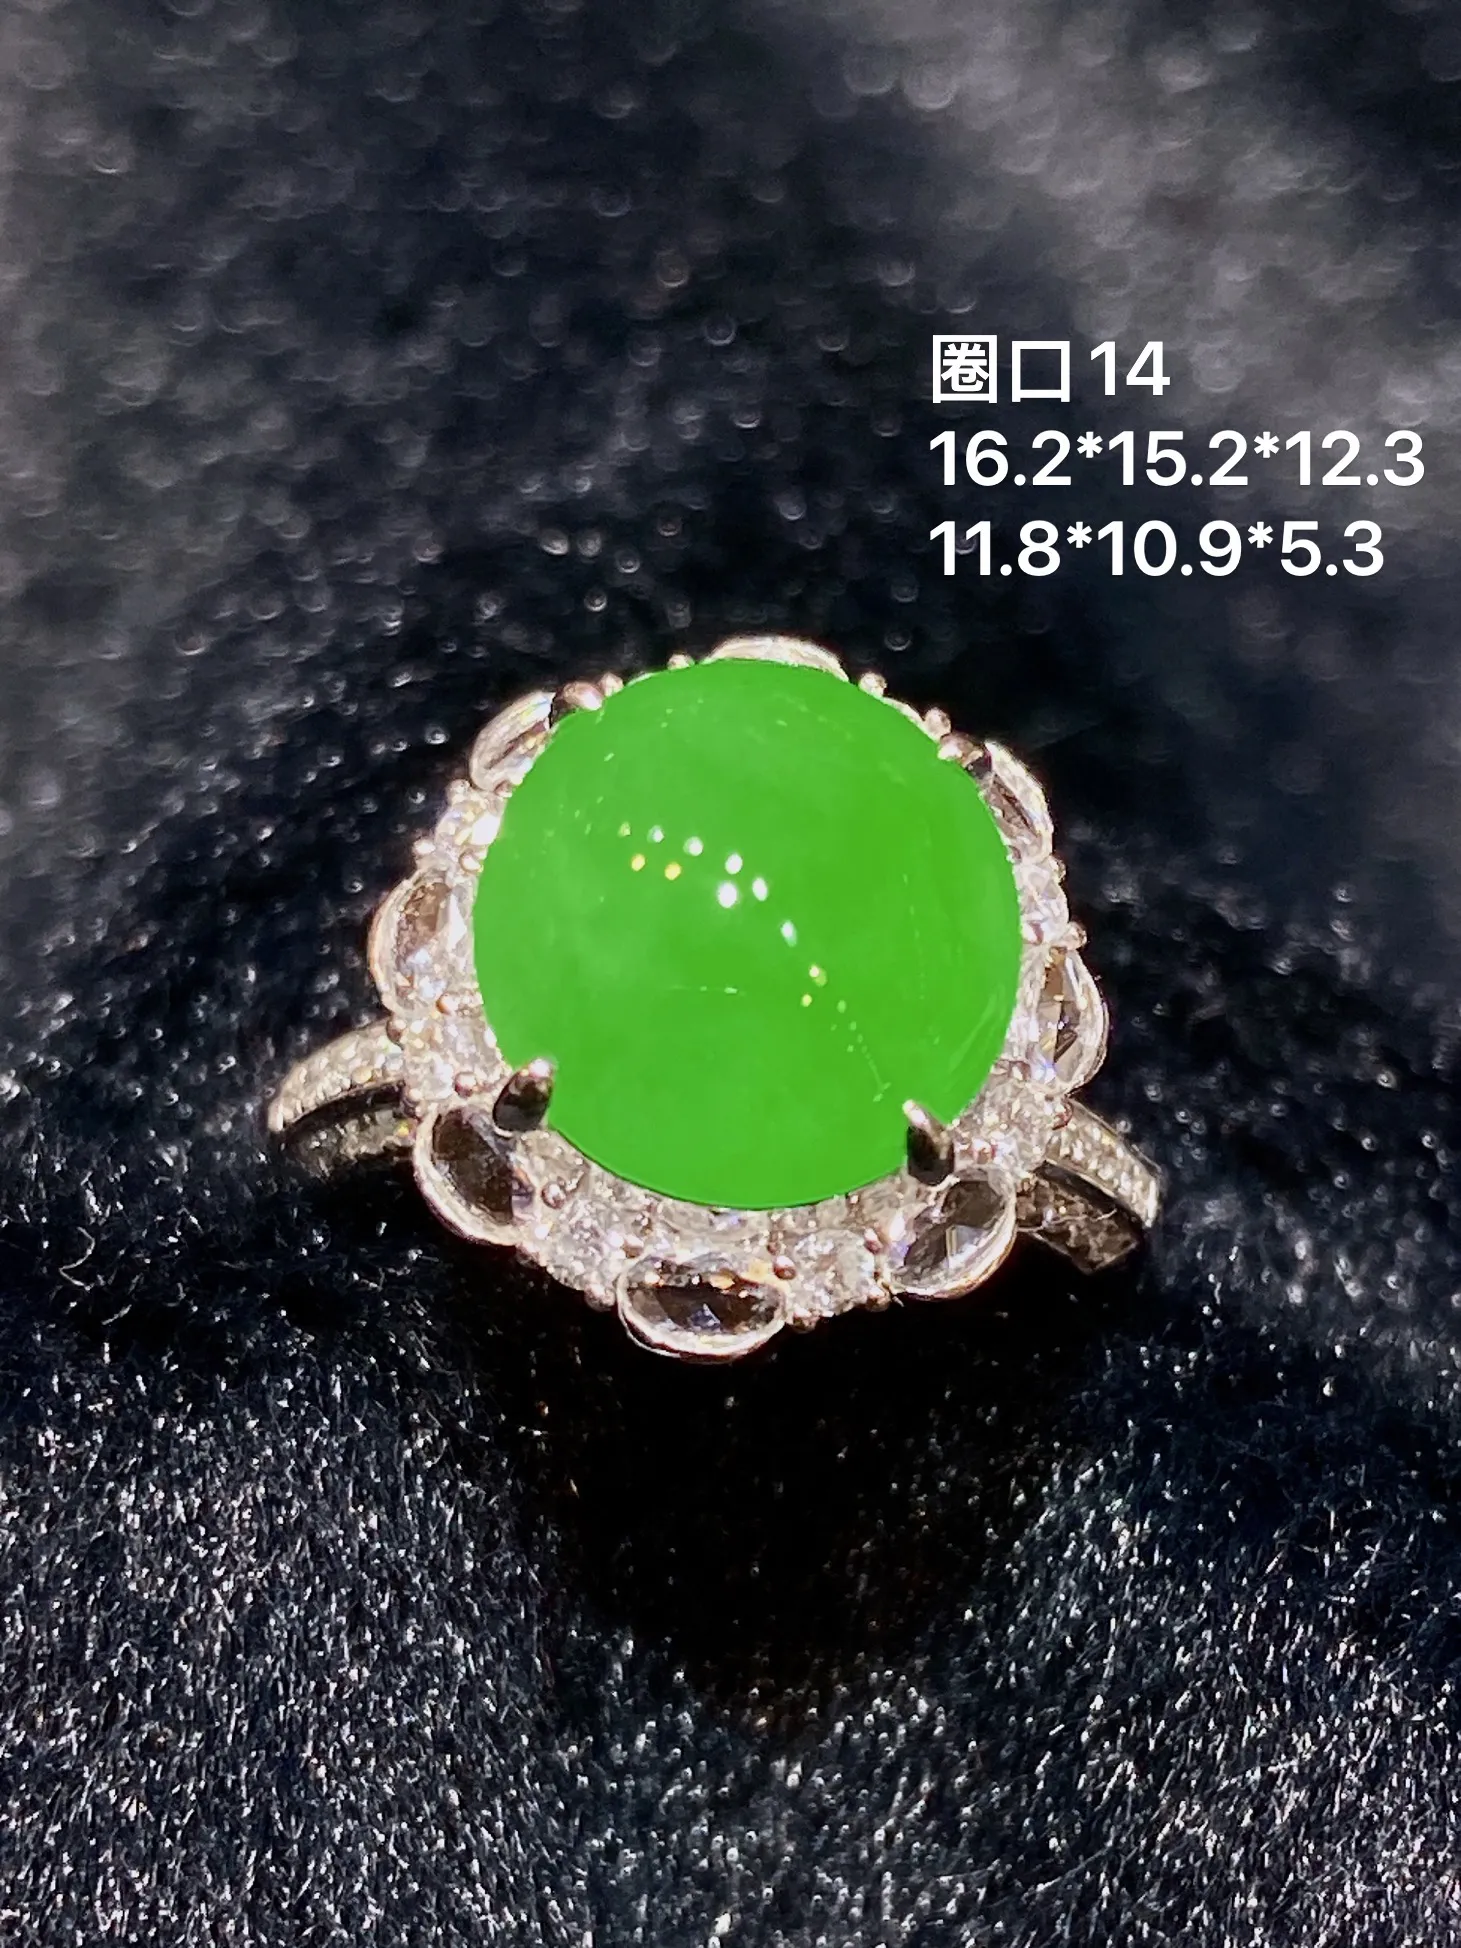 18k金钻镶嵌满绿蛋面戒指 玉质细腻 色泽艳丽 款式新颖别致 圈口14 整体尺寸16.2*15.2*12.3